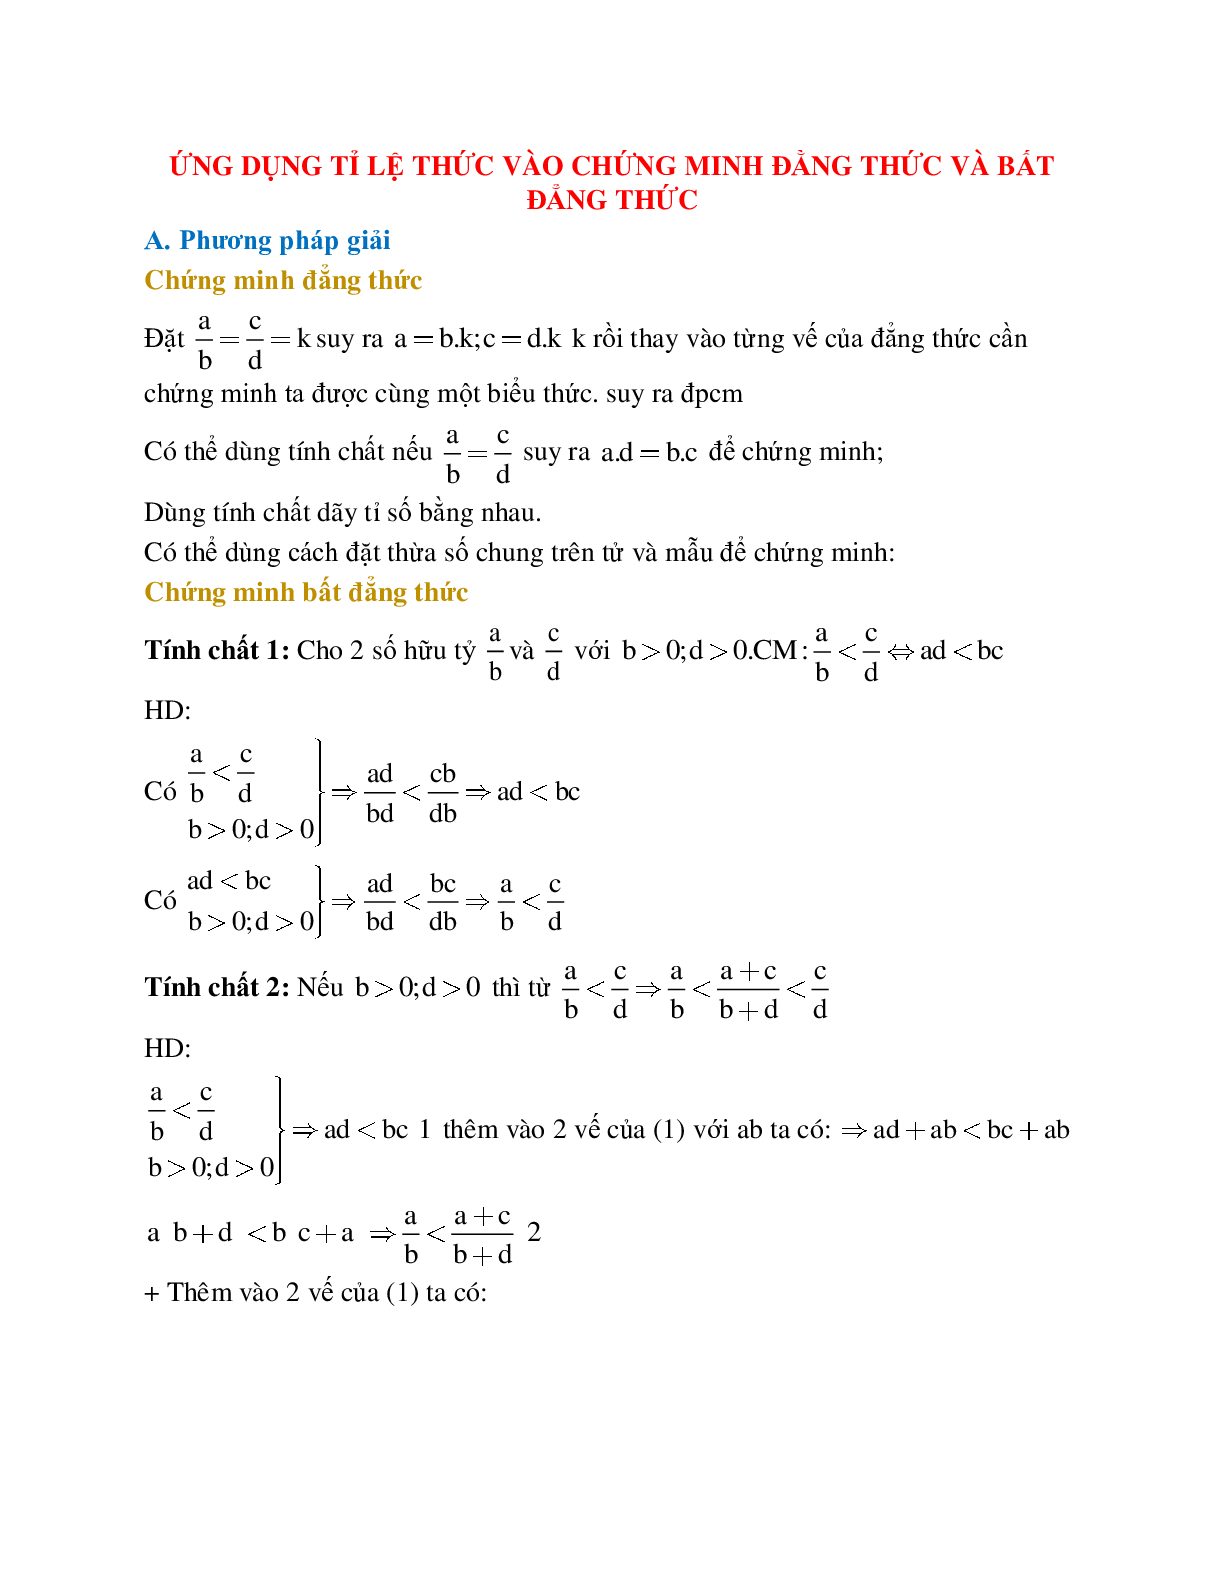 Phương pháp giải Ứng dụng tỉ lệ thức vào chứng minh đẳng thức và bất đẳng thức (trang 1)